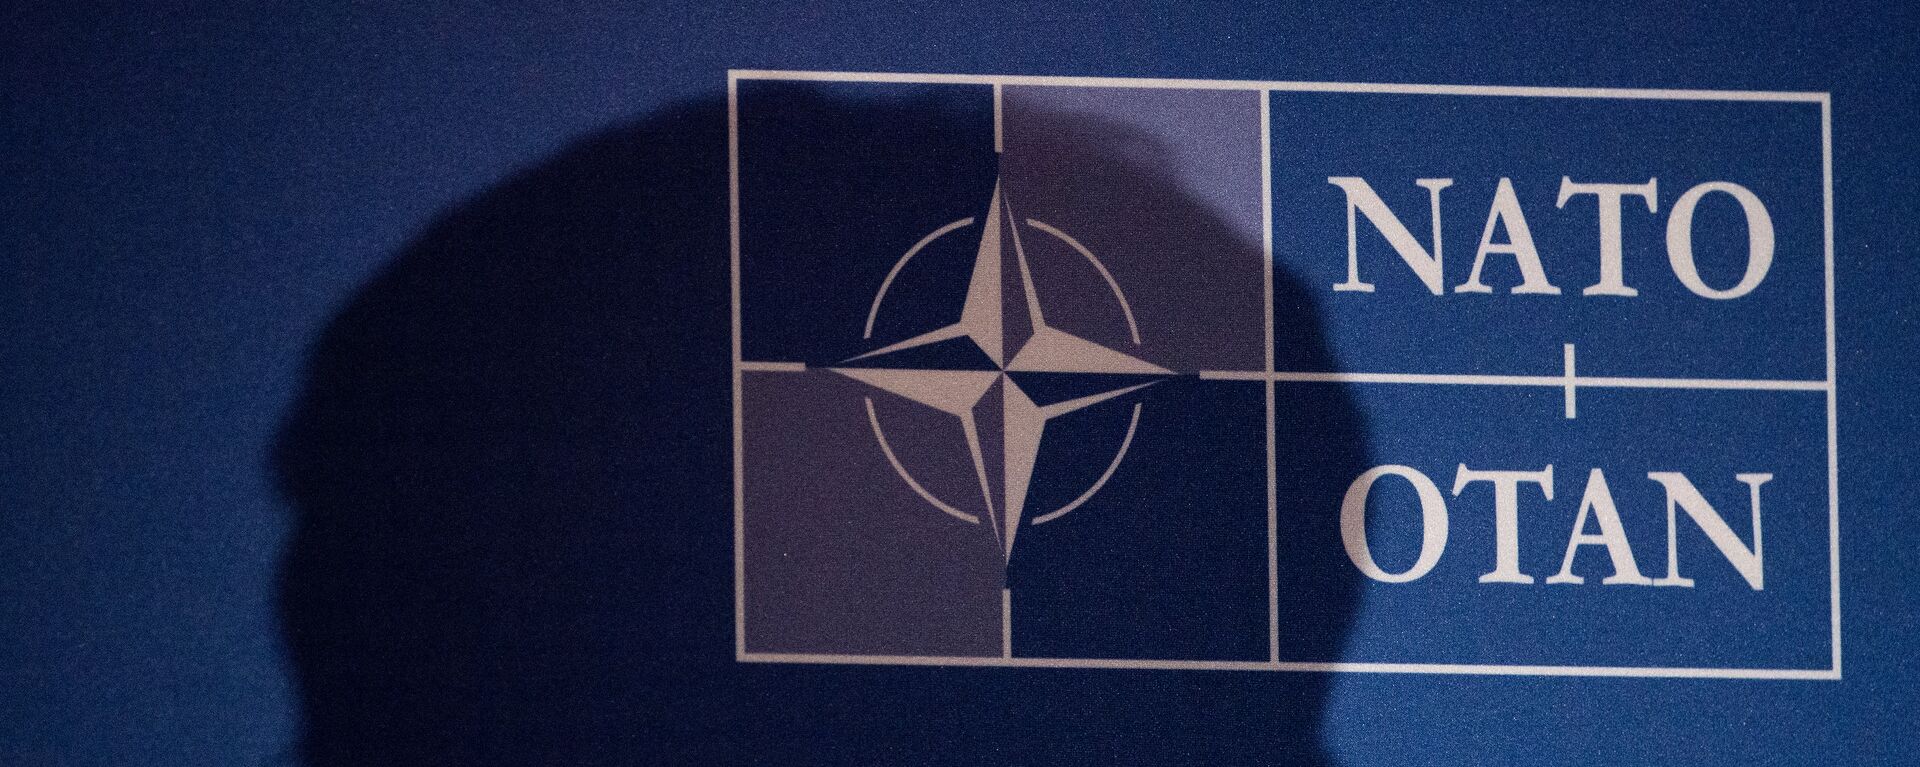 Logo de la OTAN - Sputnik Mundo, 1920, 16.12.2021